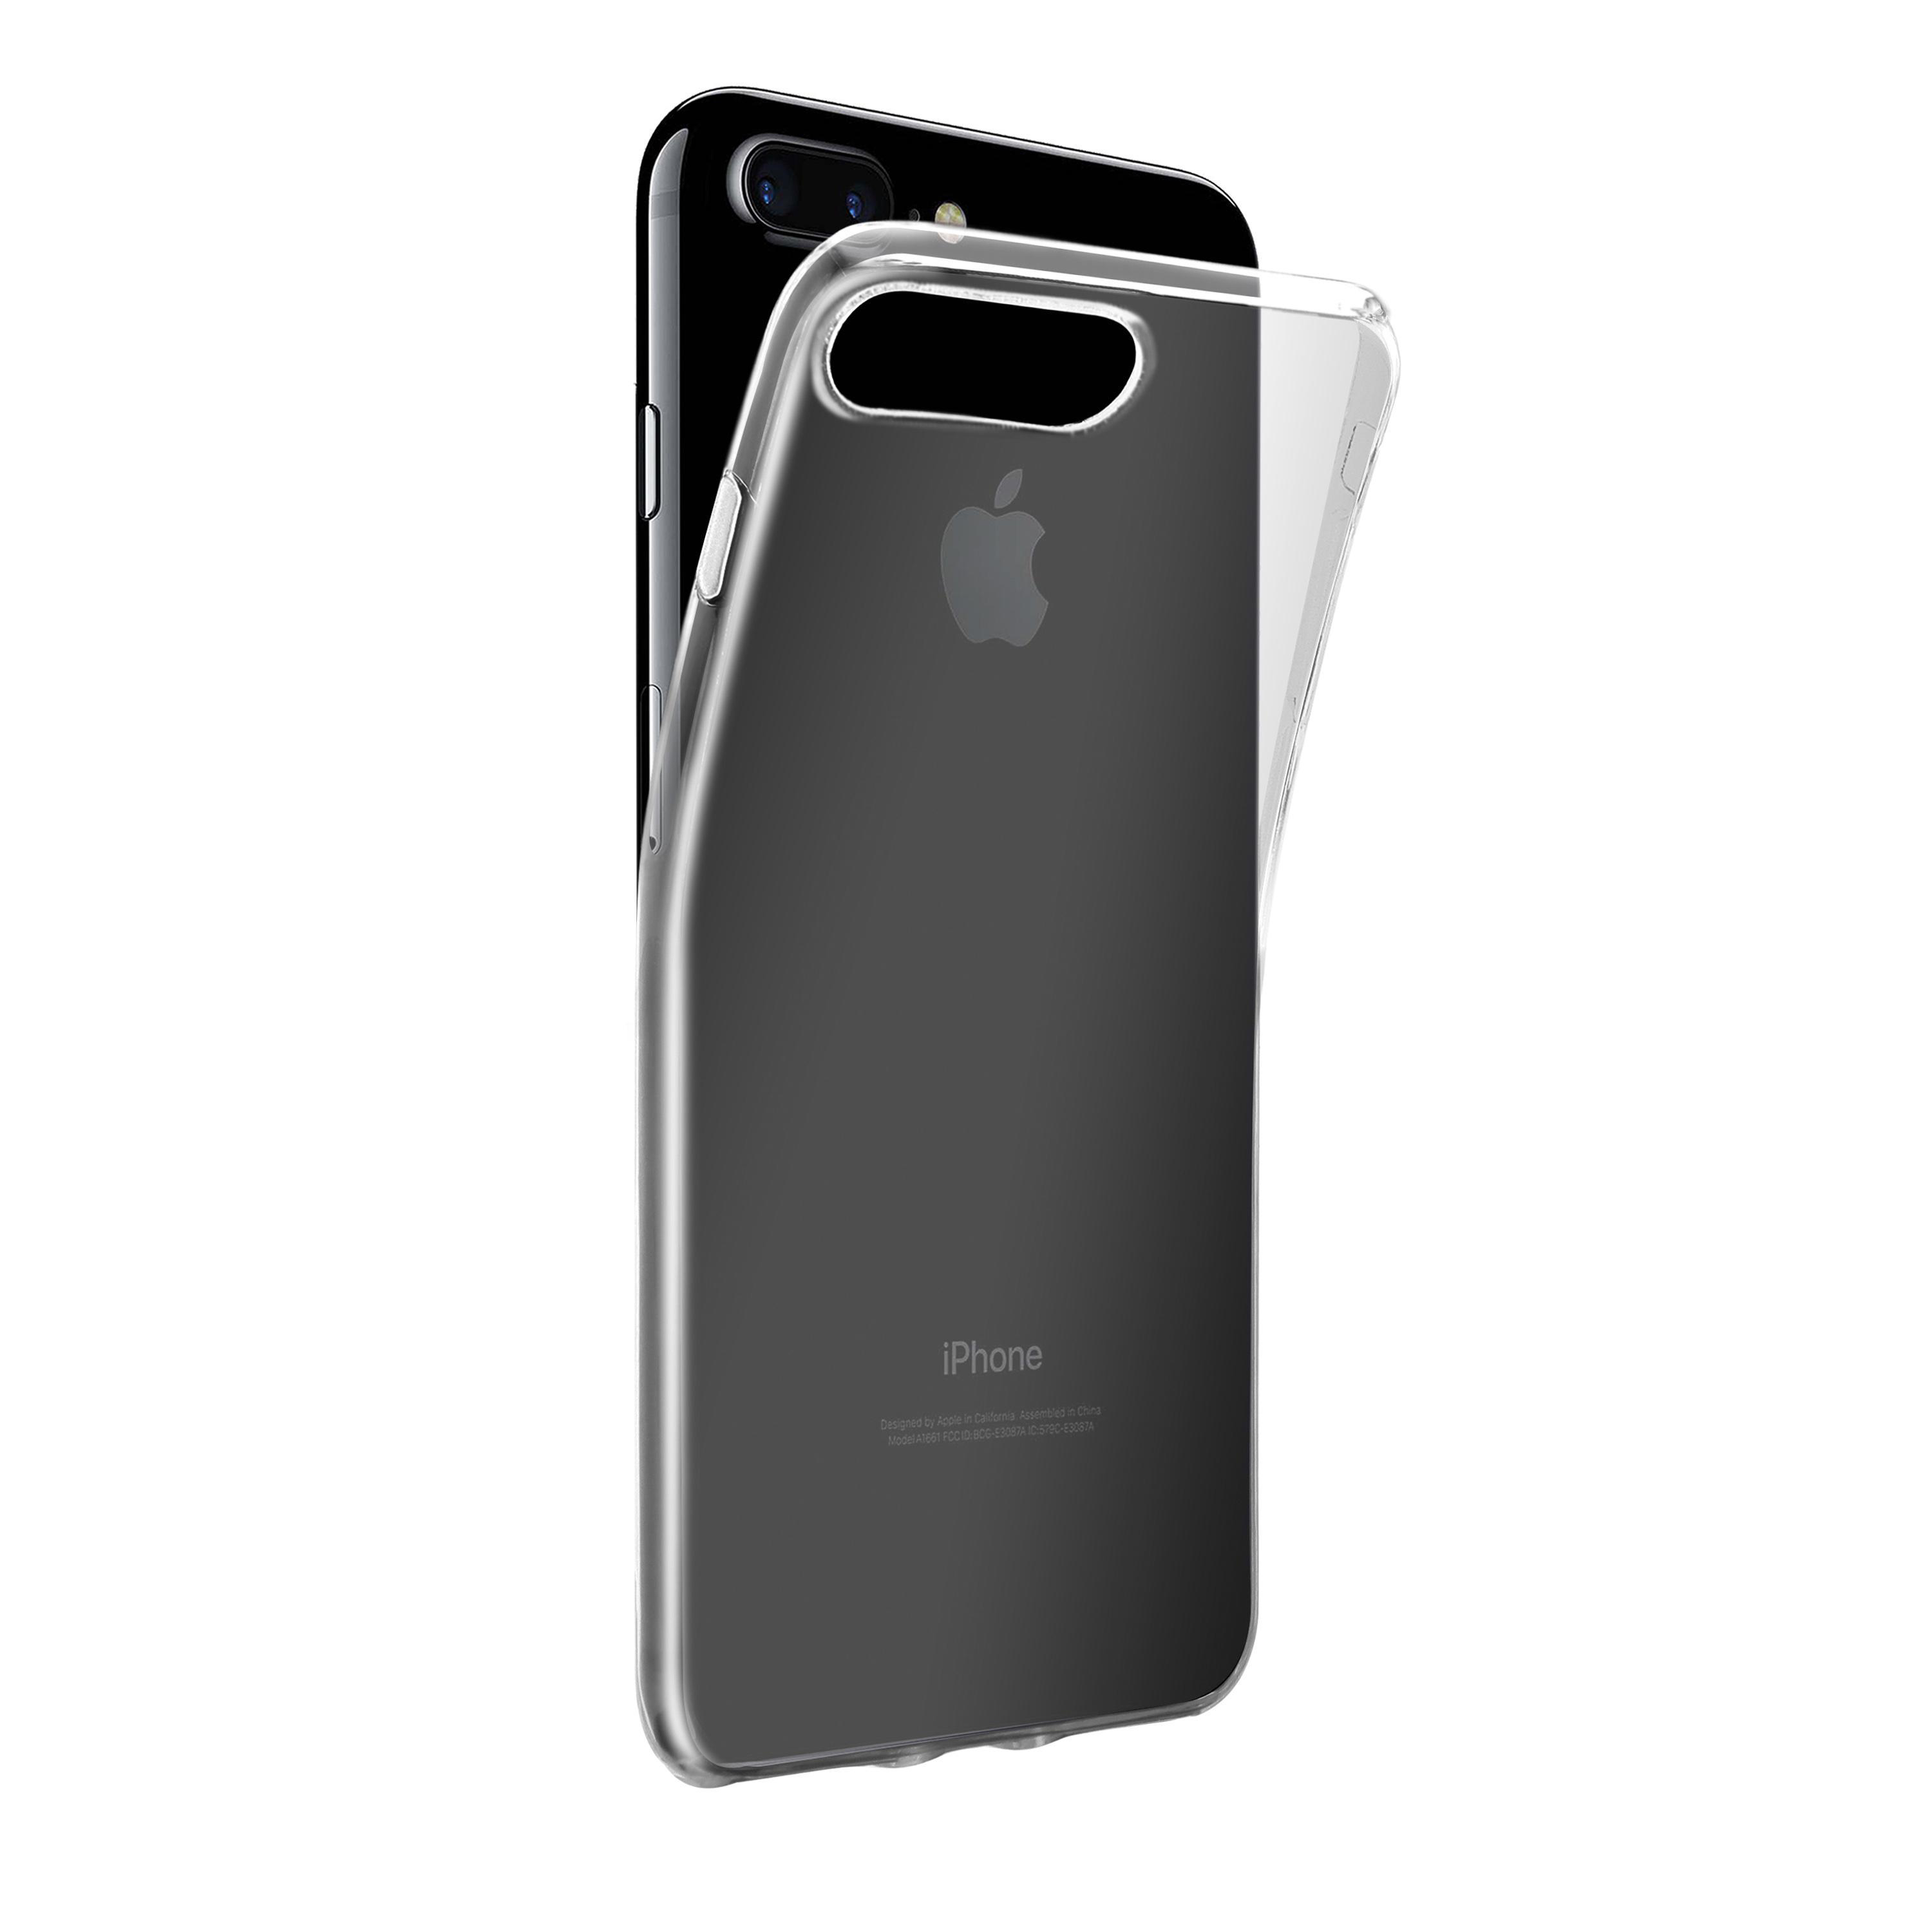 Super Transparent Slim, Plus, iPhone 8 Plus, 7 VIVANCO iPhone Apple, Backcover,